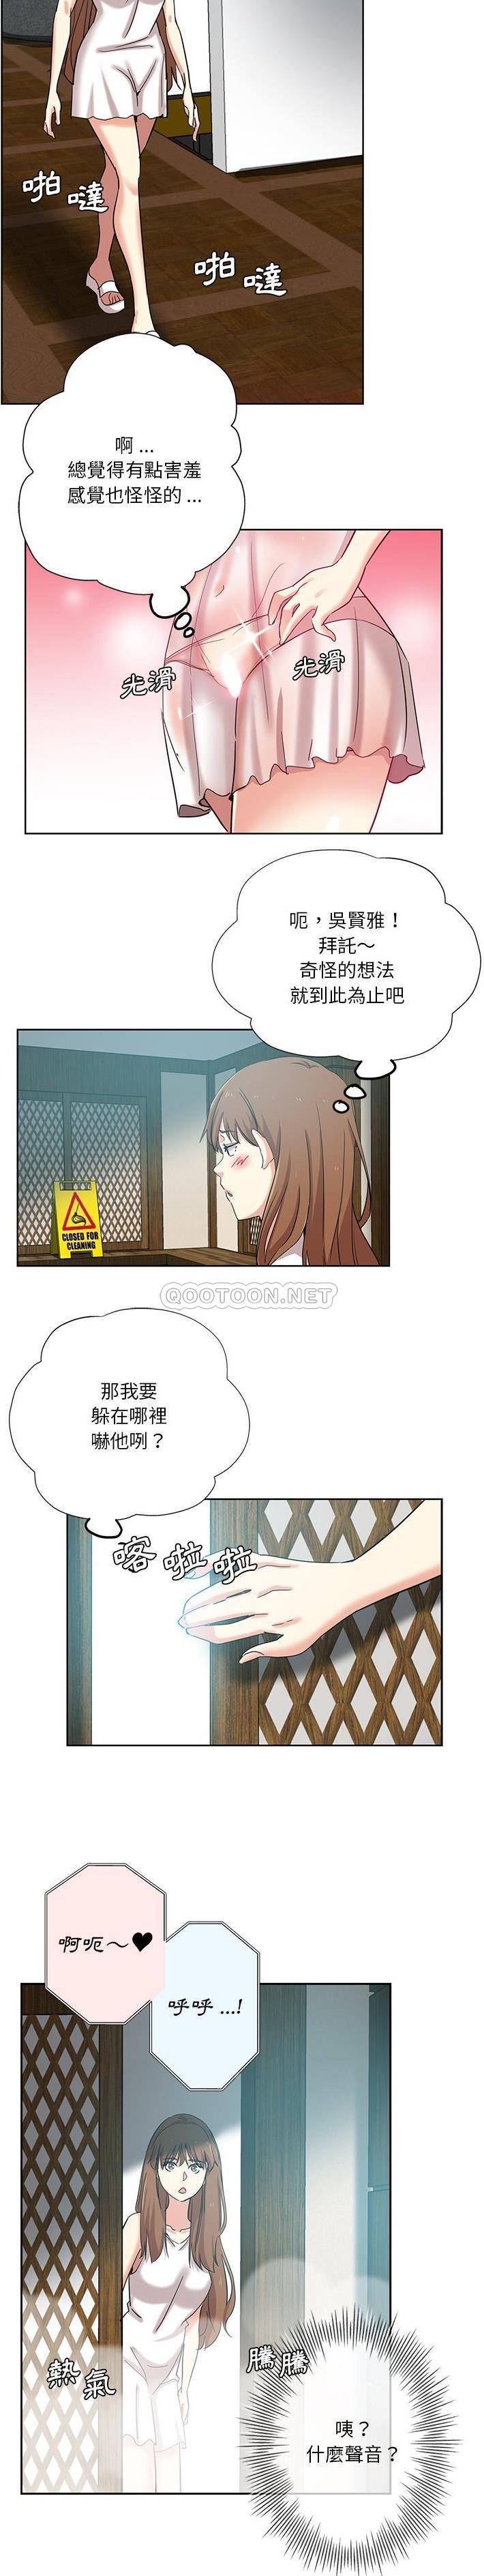 韩国污漫画 危險純友誼 第21话 3